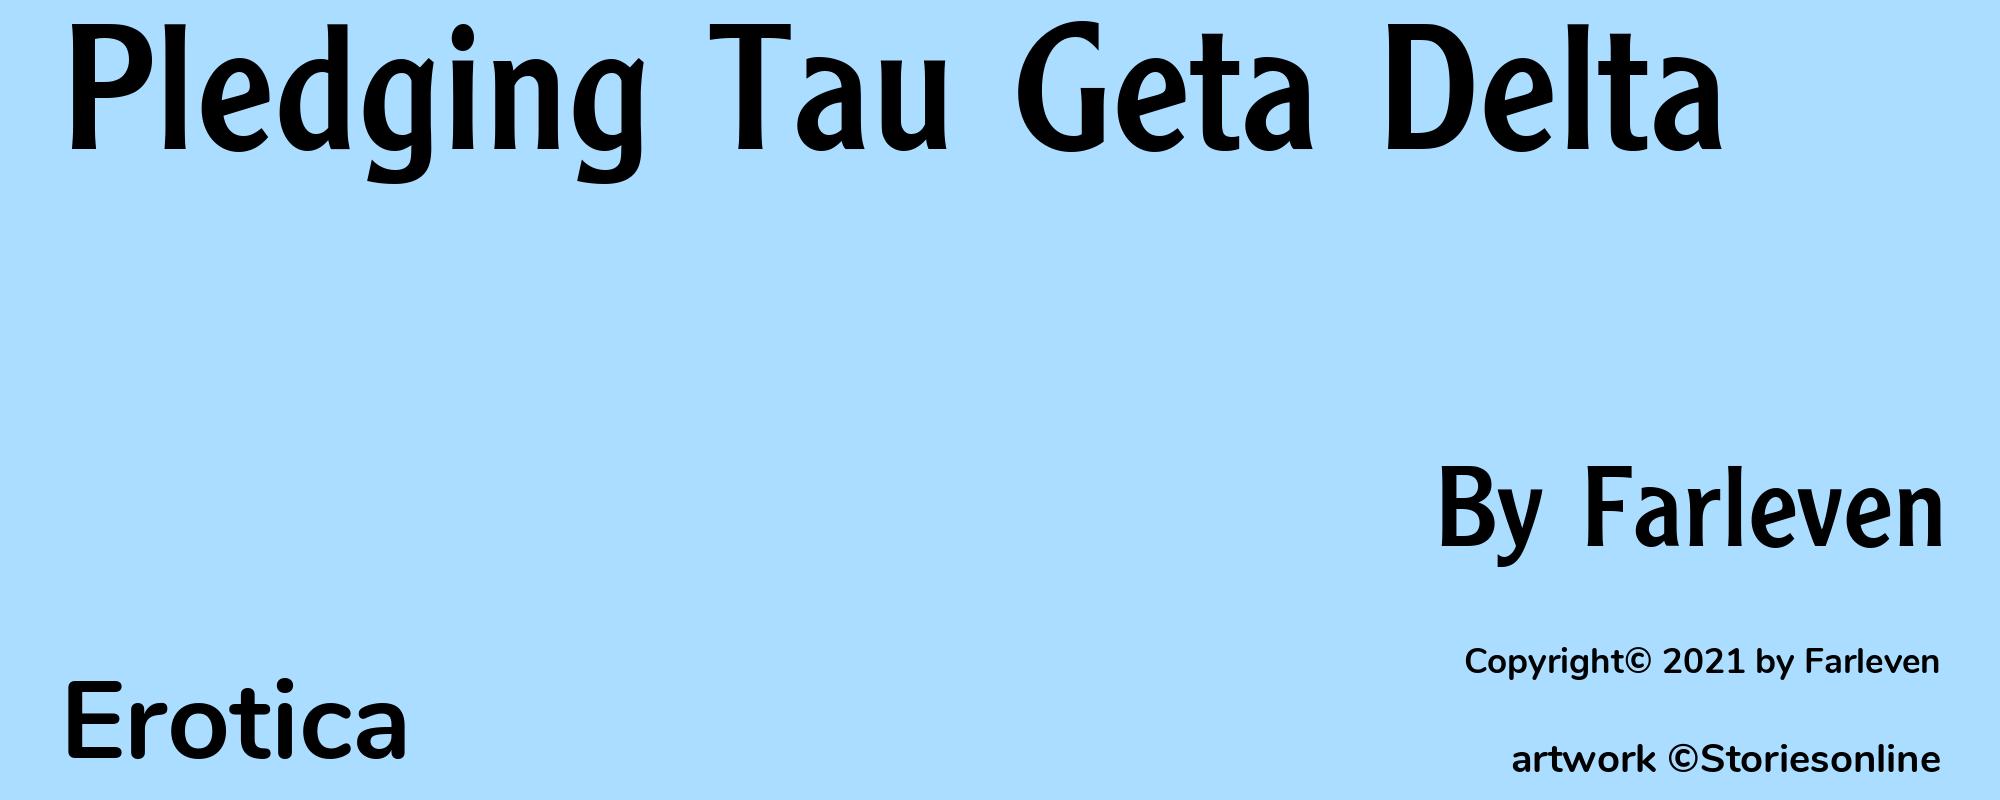 Pledging Tau Geta Delta - Cover